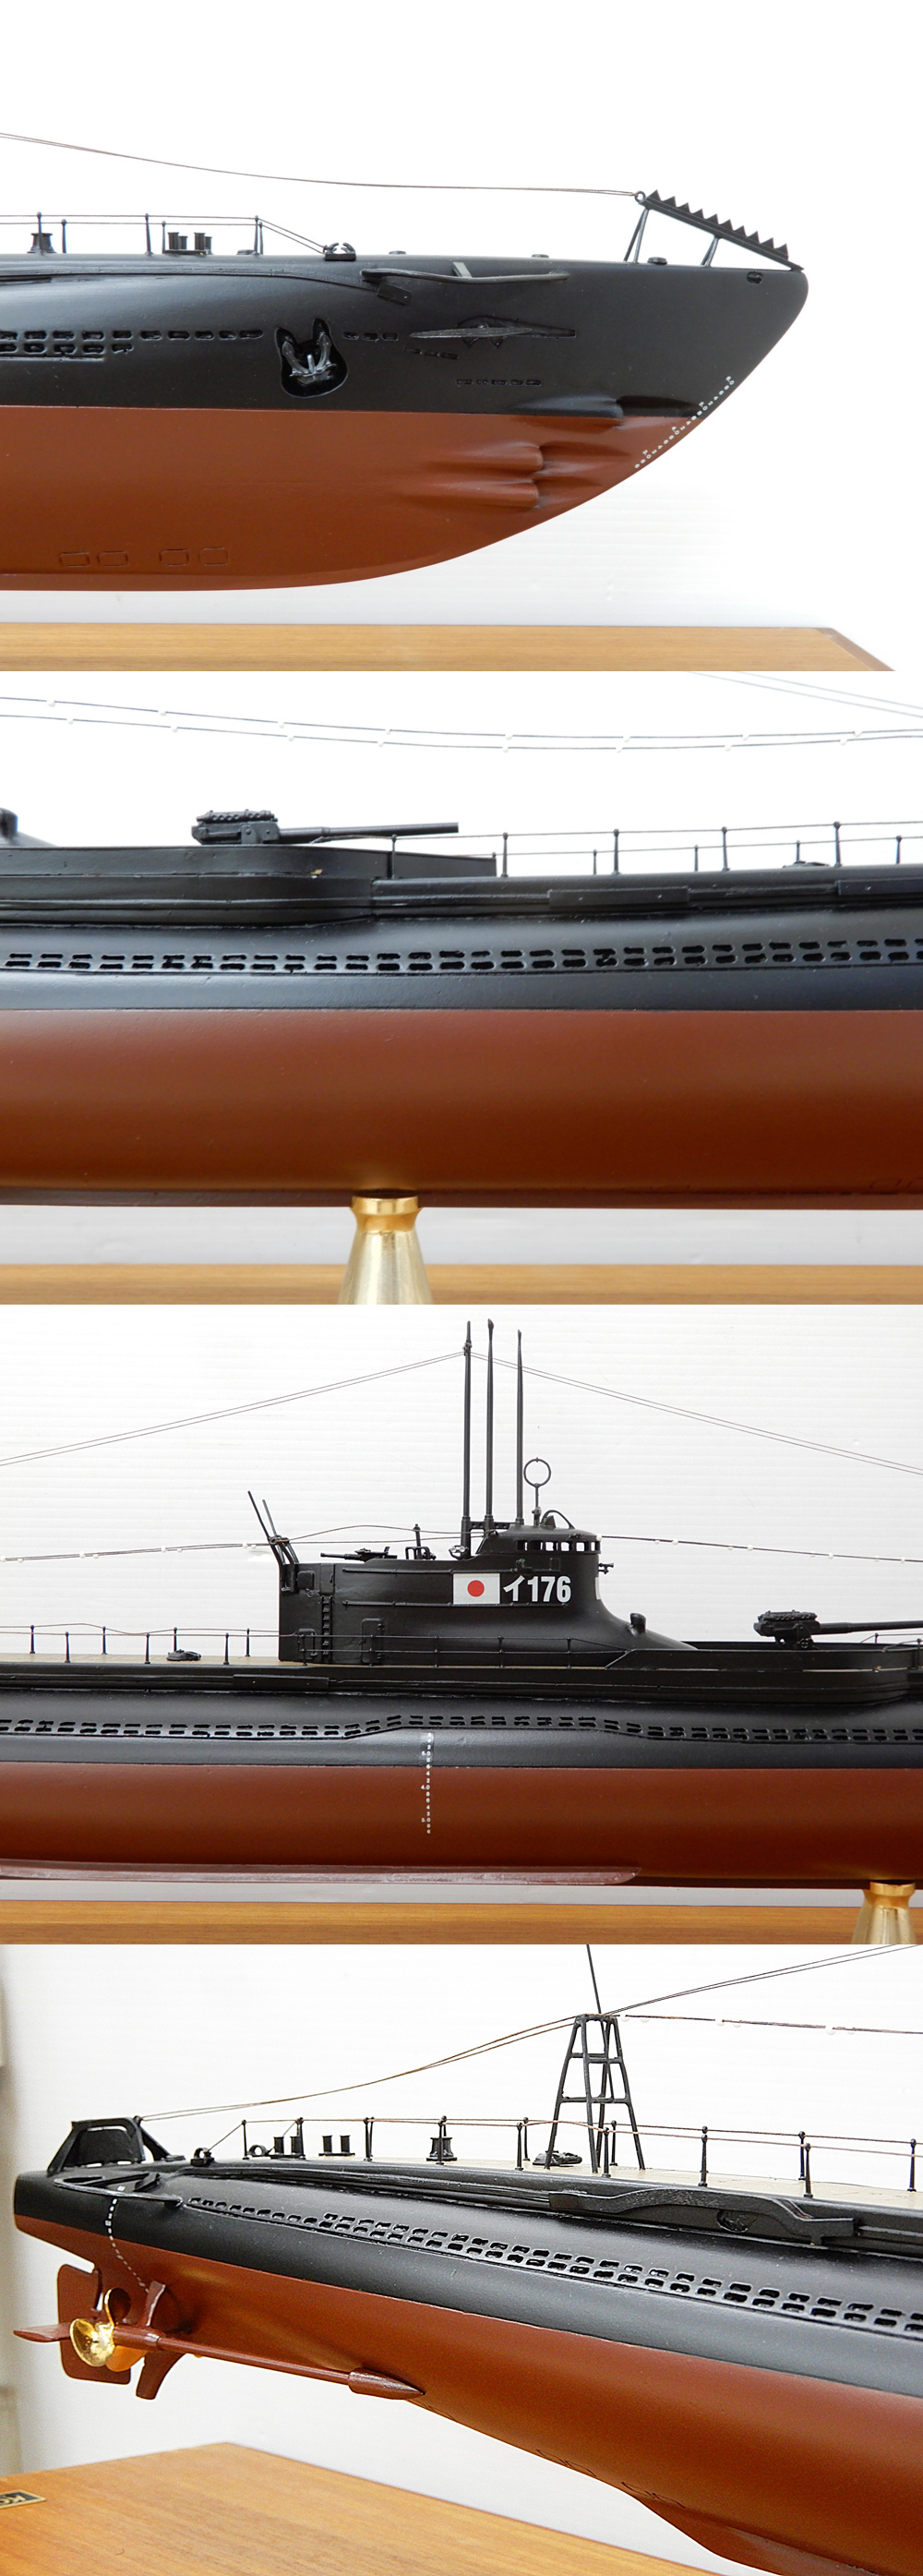 自民党◆小西製作所 日本海軍一等潜水艦海大Ⅶ型 イ176 模型 1/100 全長107cm 大型模型 ケース付き 潜水艦模型 完成品